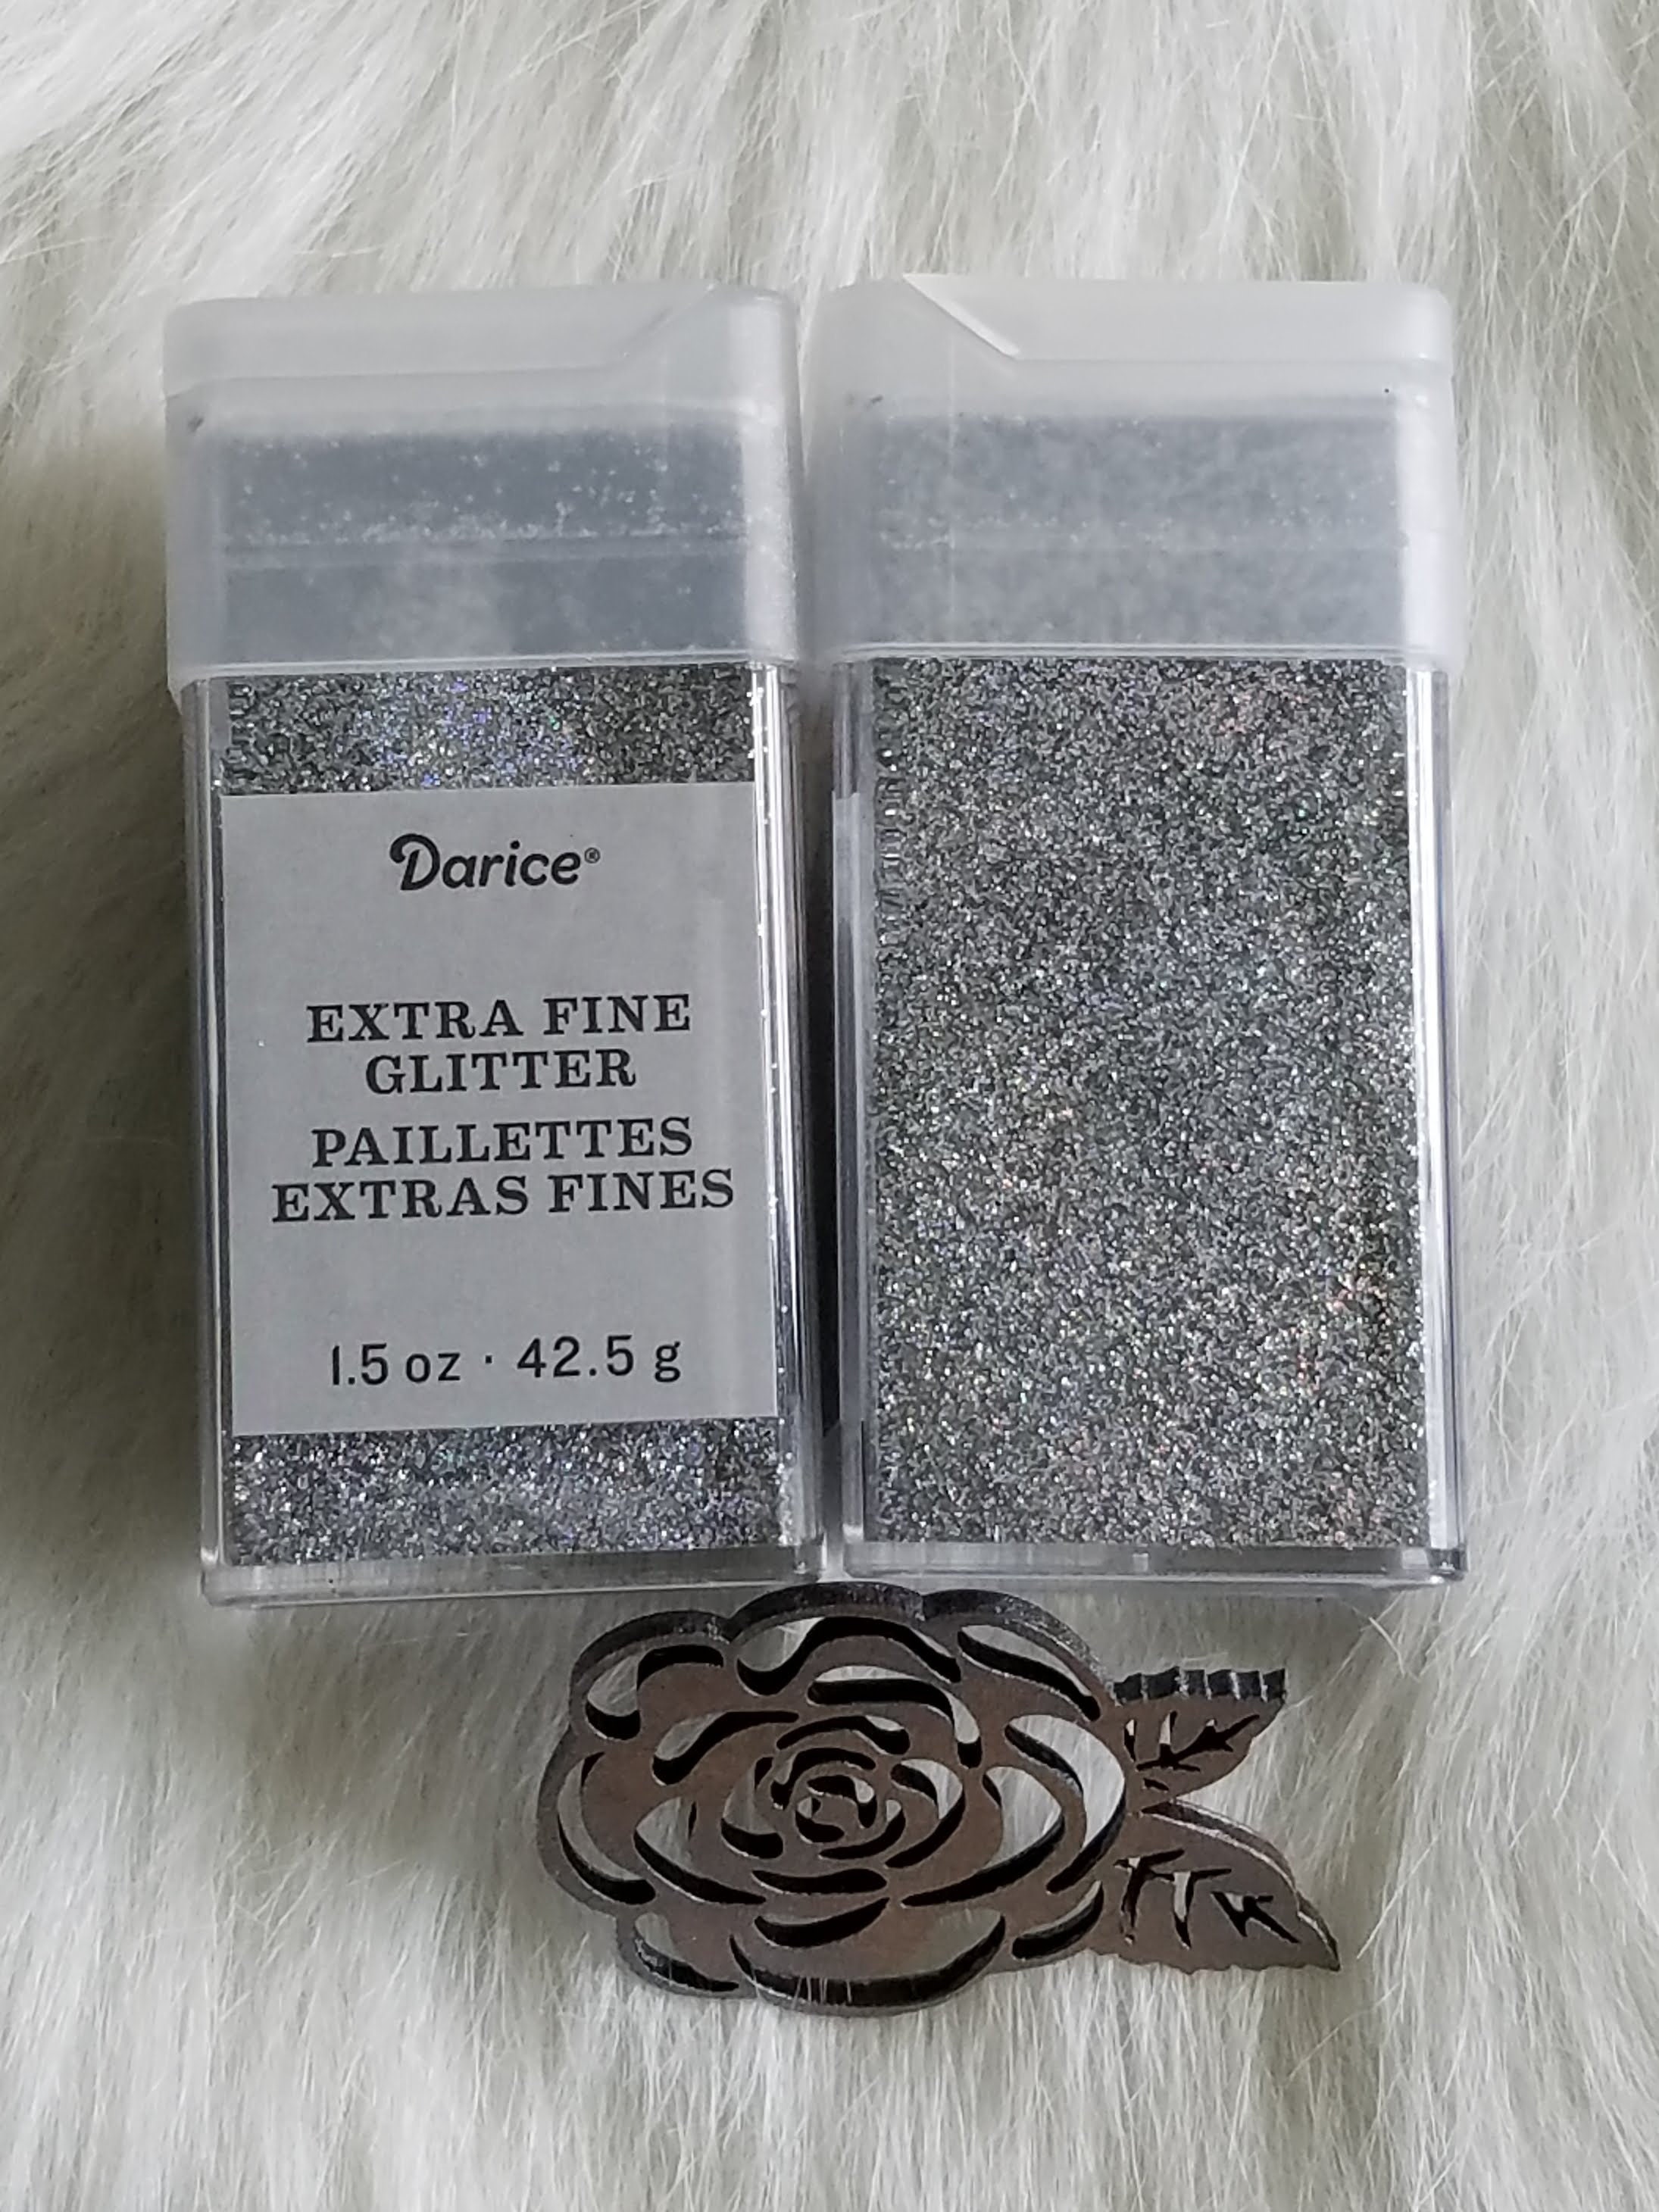 Darice Bling Extra Fine Glitter 1.5oz Compare With Recollections Bling Extra  Fine Glitter Line identical Glitter for Tumblers 